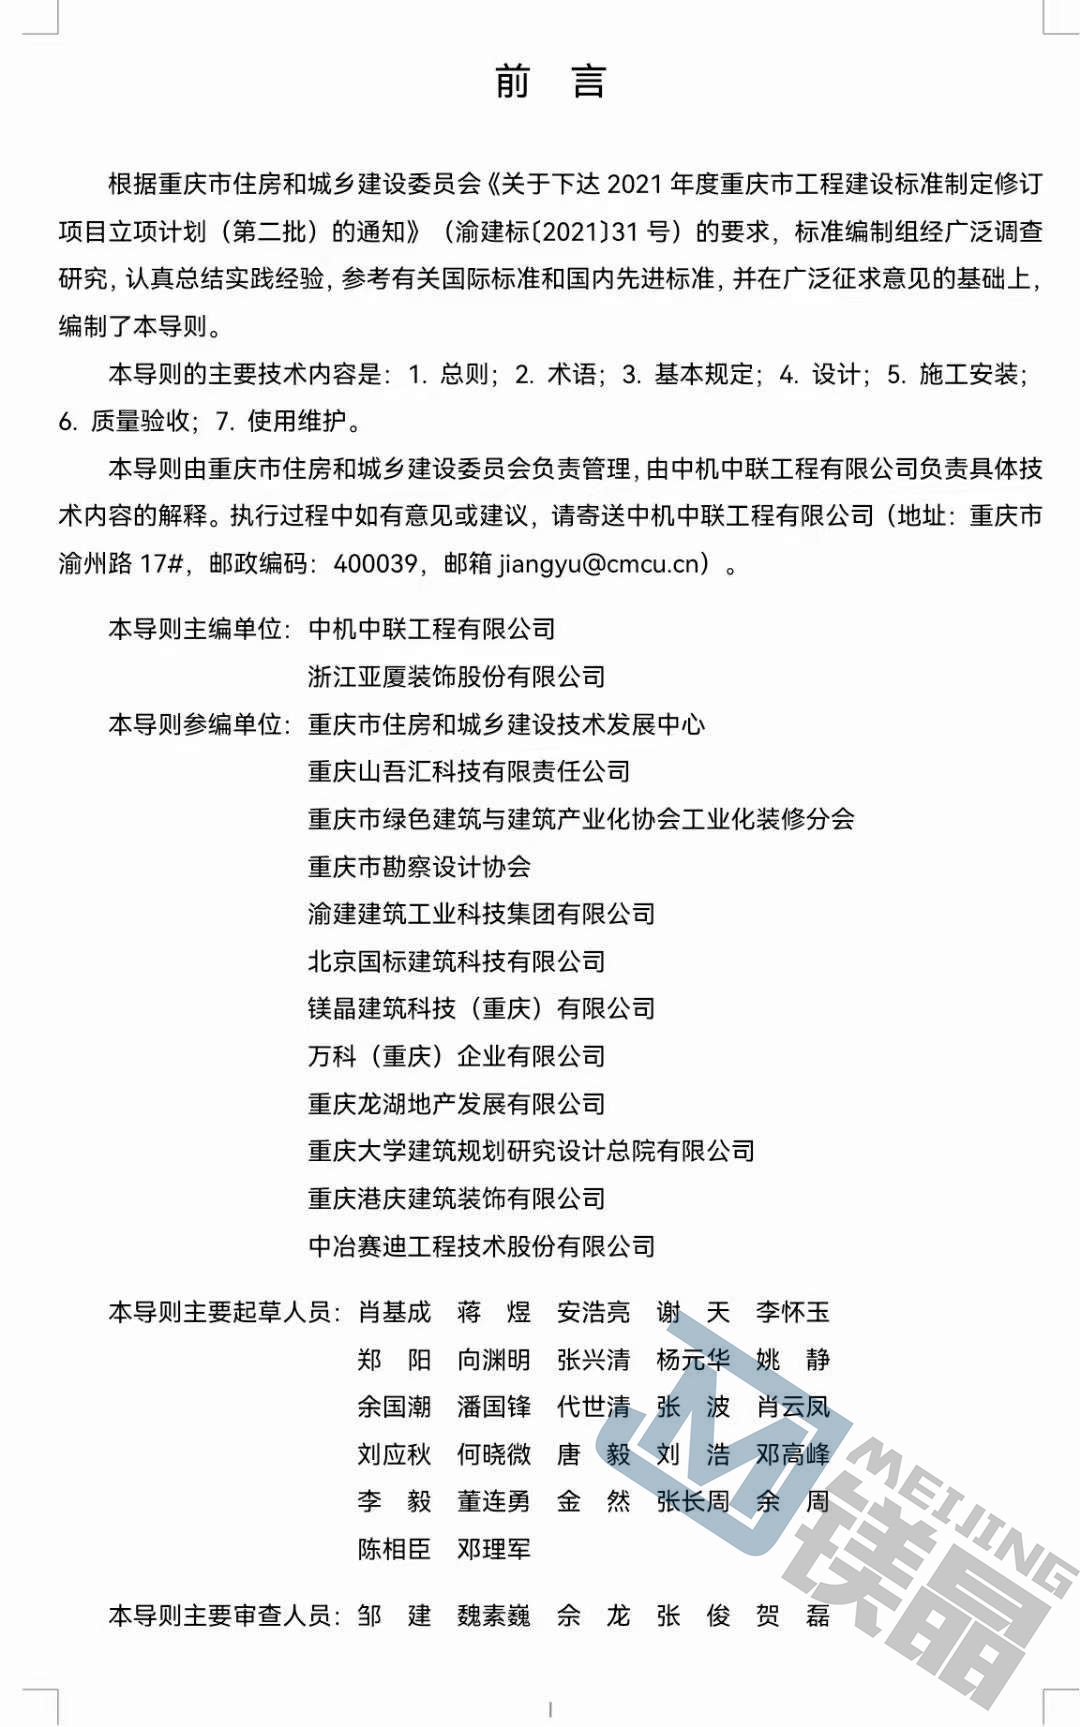 《重庆市工业化内装修技术导则》批准发布，自11.1日实行